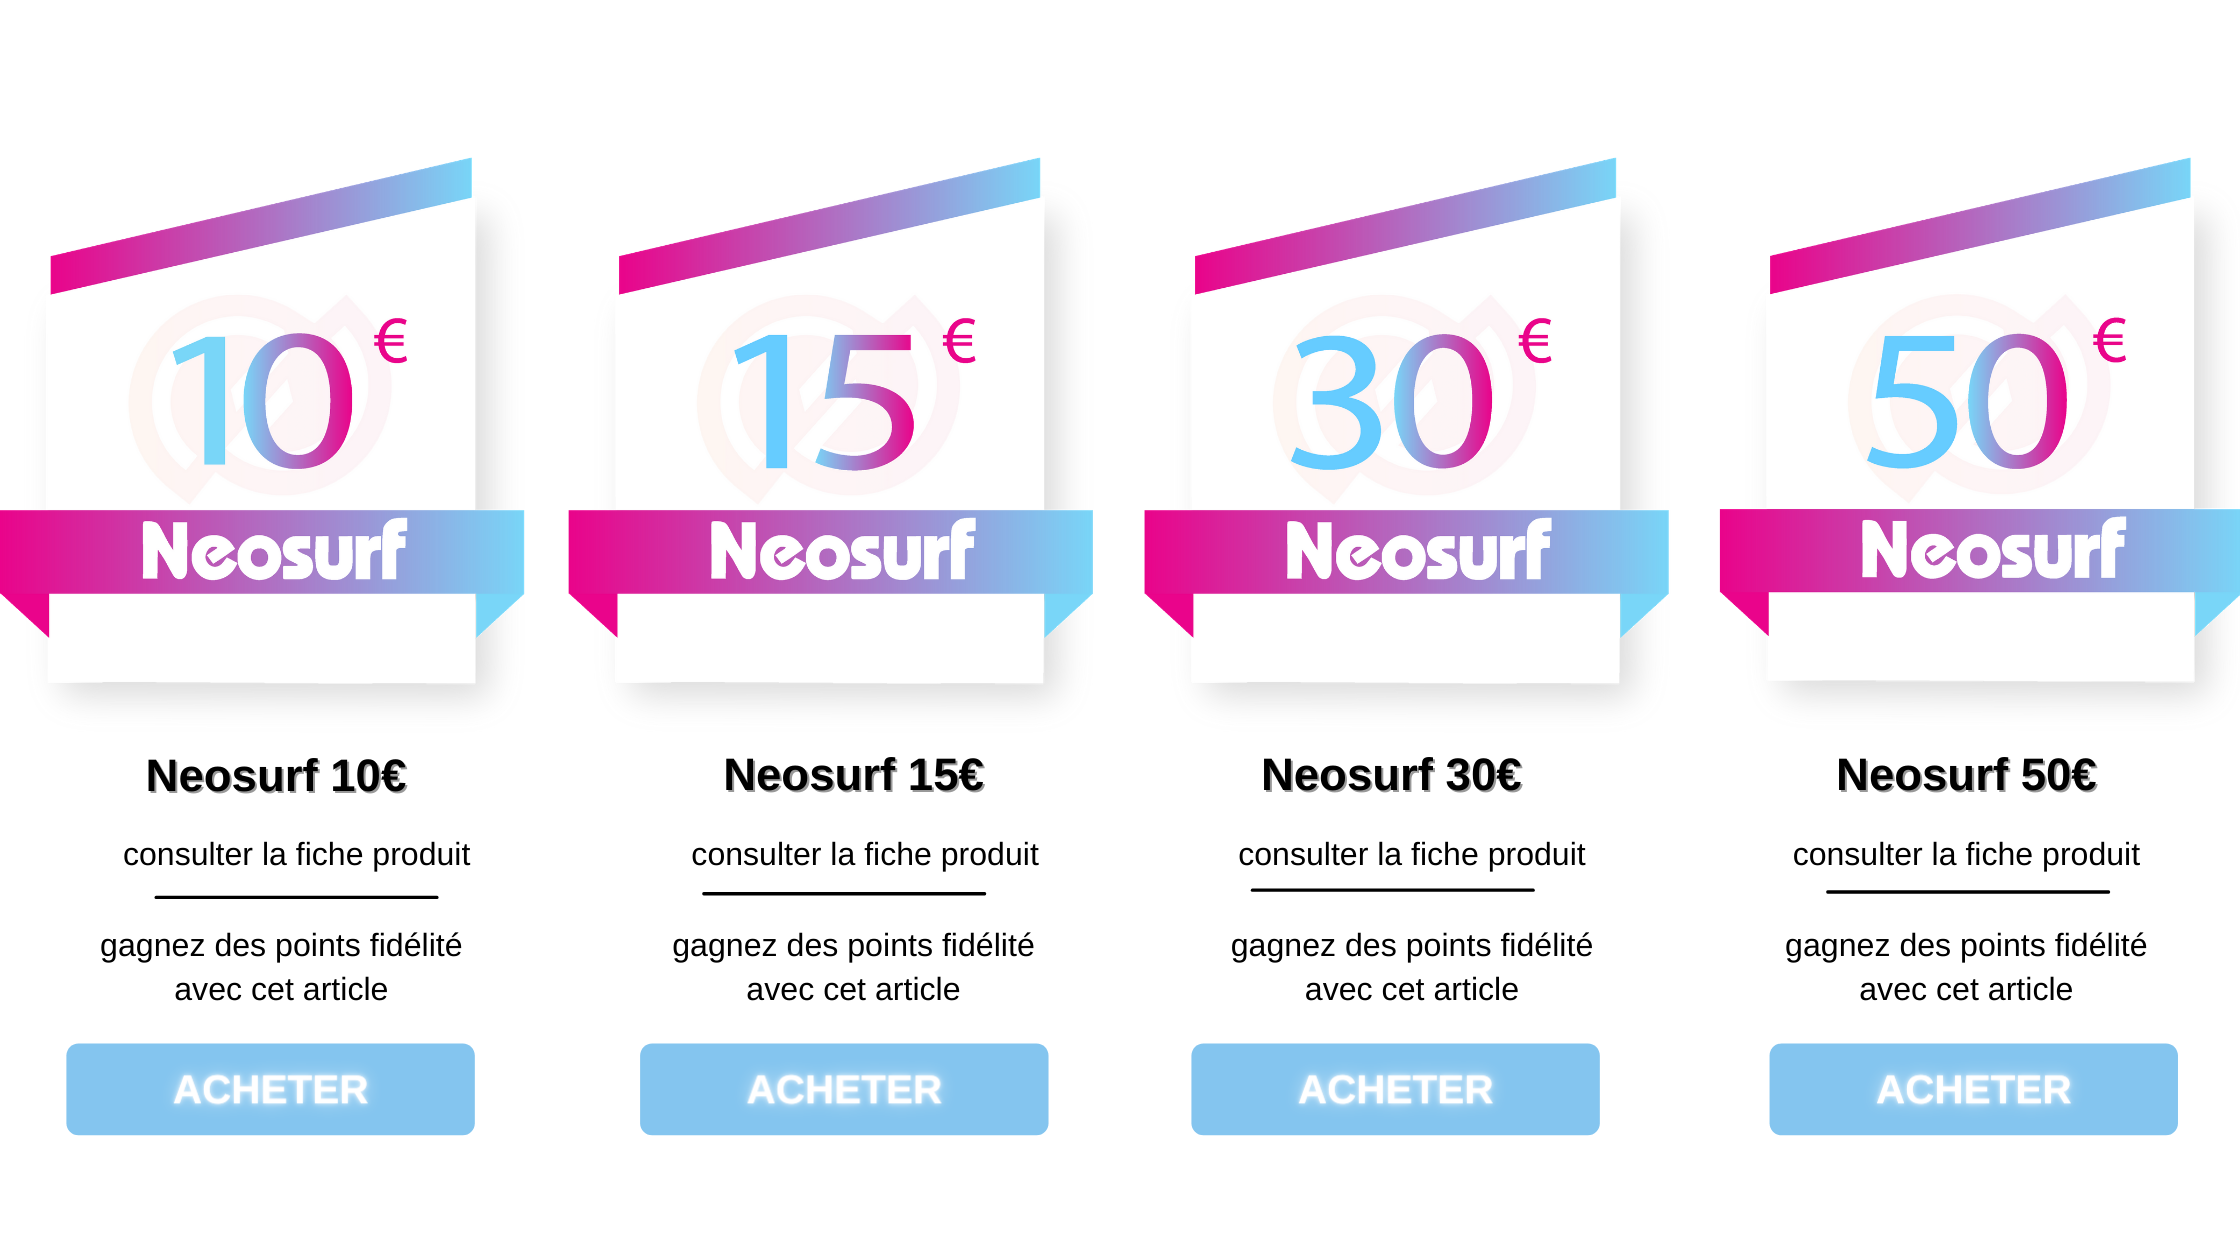 acheter des coupons neosurf, neosurf 10€, neosurf 15€, neosurf 30€, neosurf 50€, neosurf mineur, code promo neosurf, ou acheter neosurf, neosurf sur internet, vendeur neosurf, gagner naosurf